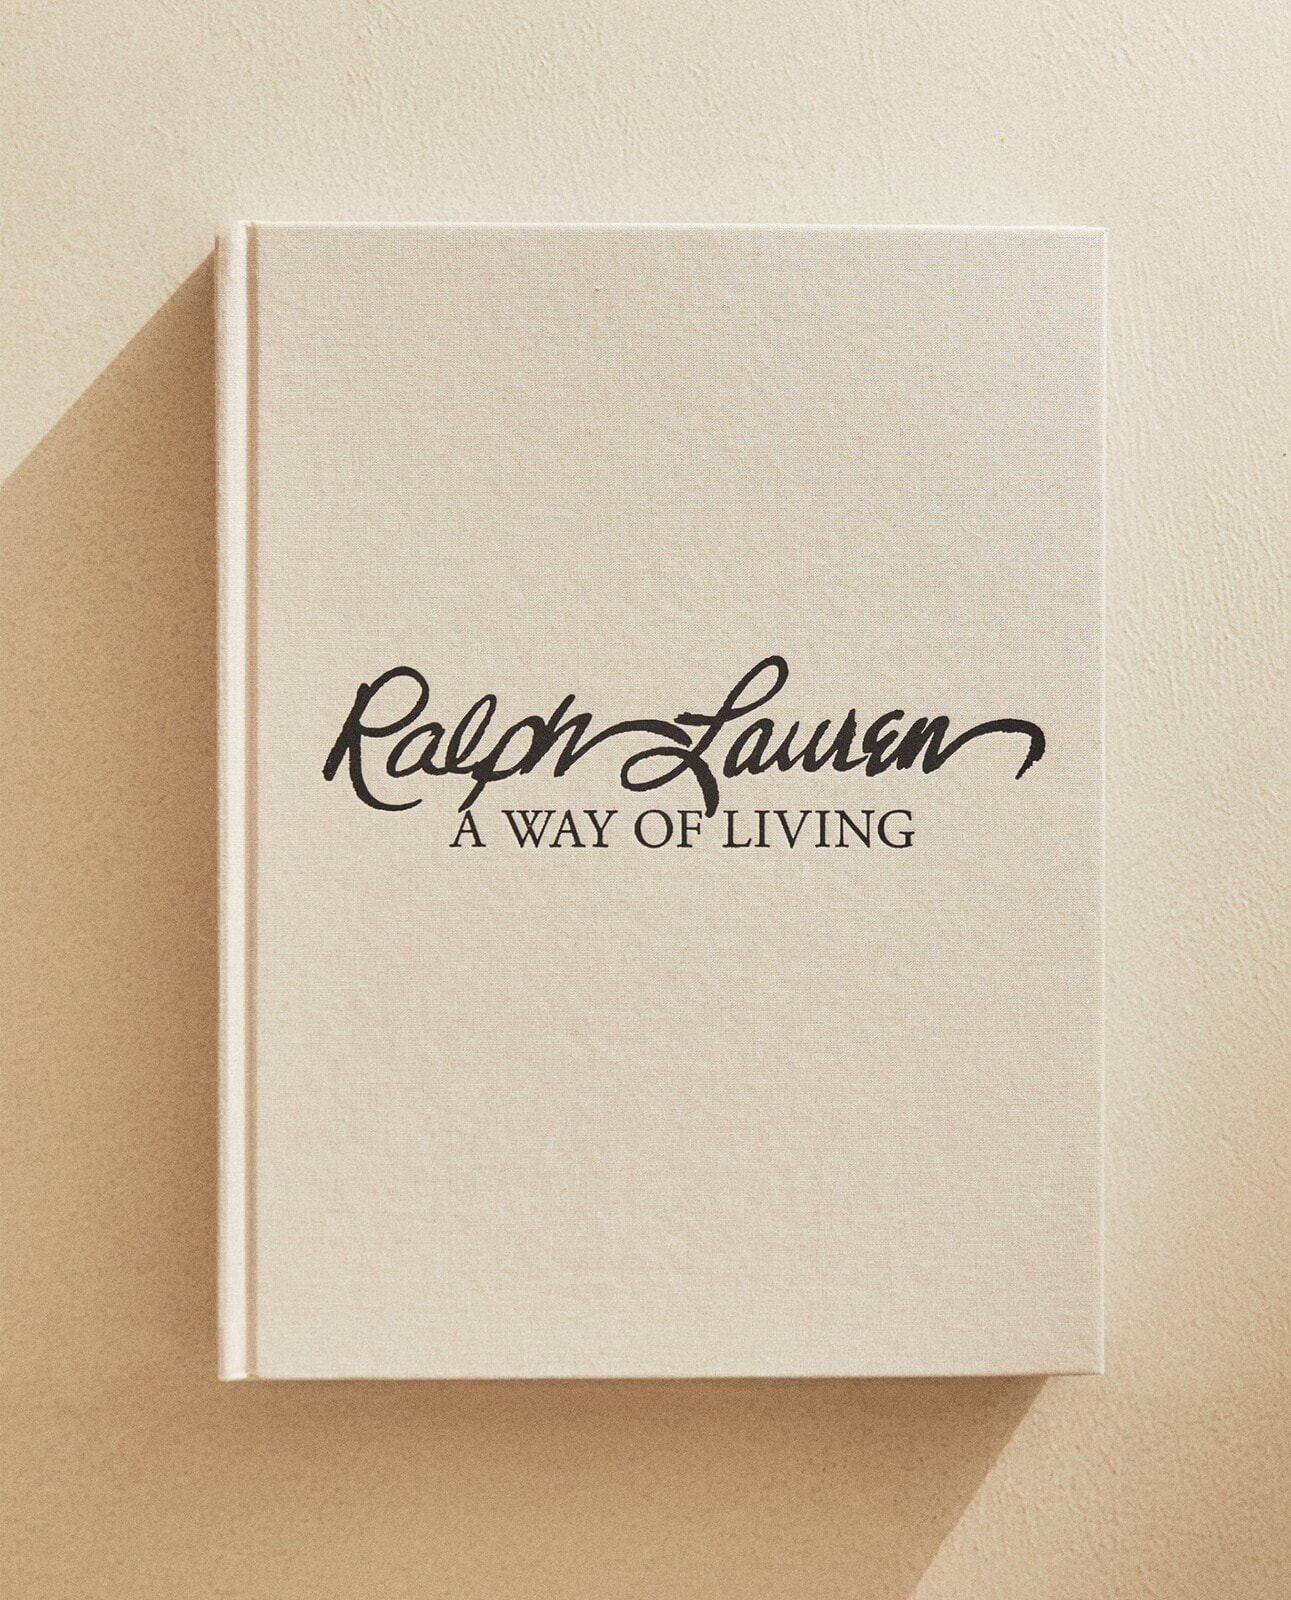 Ralph lauren a way of living book